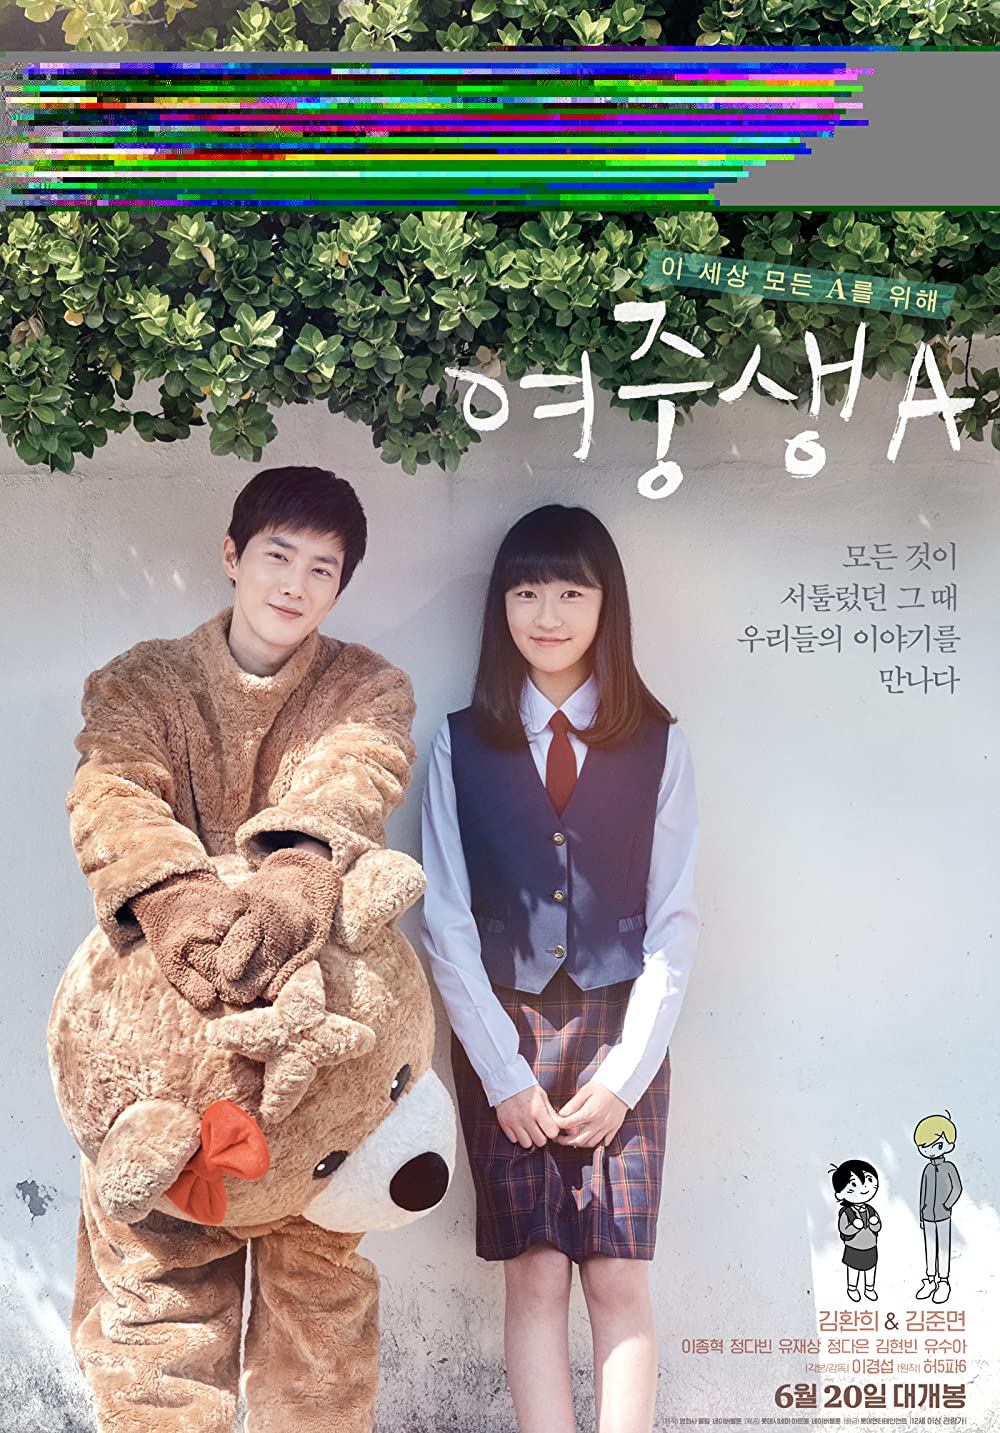 11 Film Korea tentang sekolah, kisah cinta & pilu di dunia pendidikan